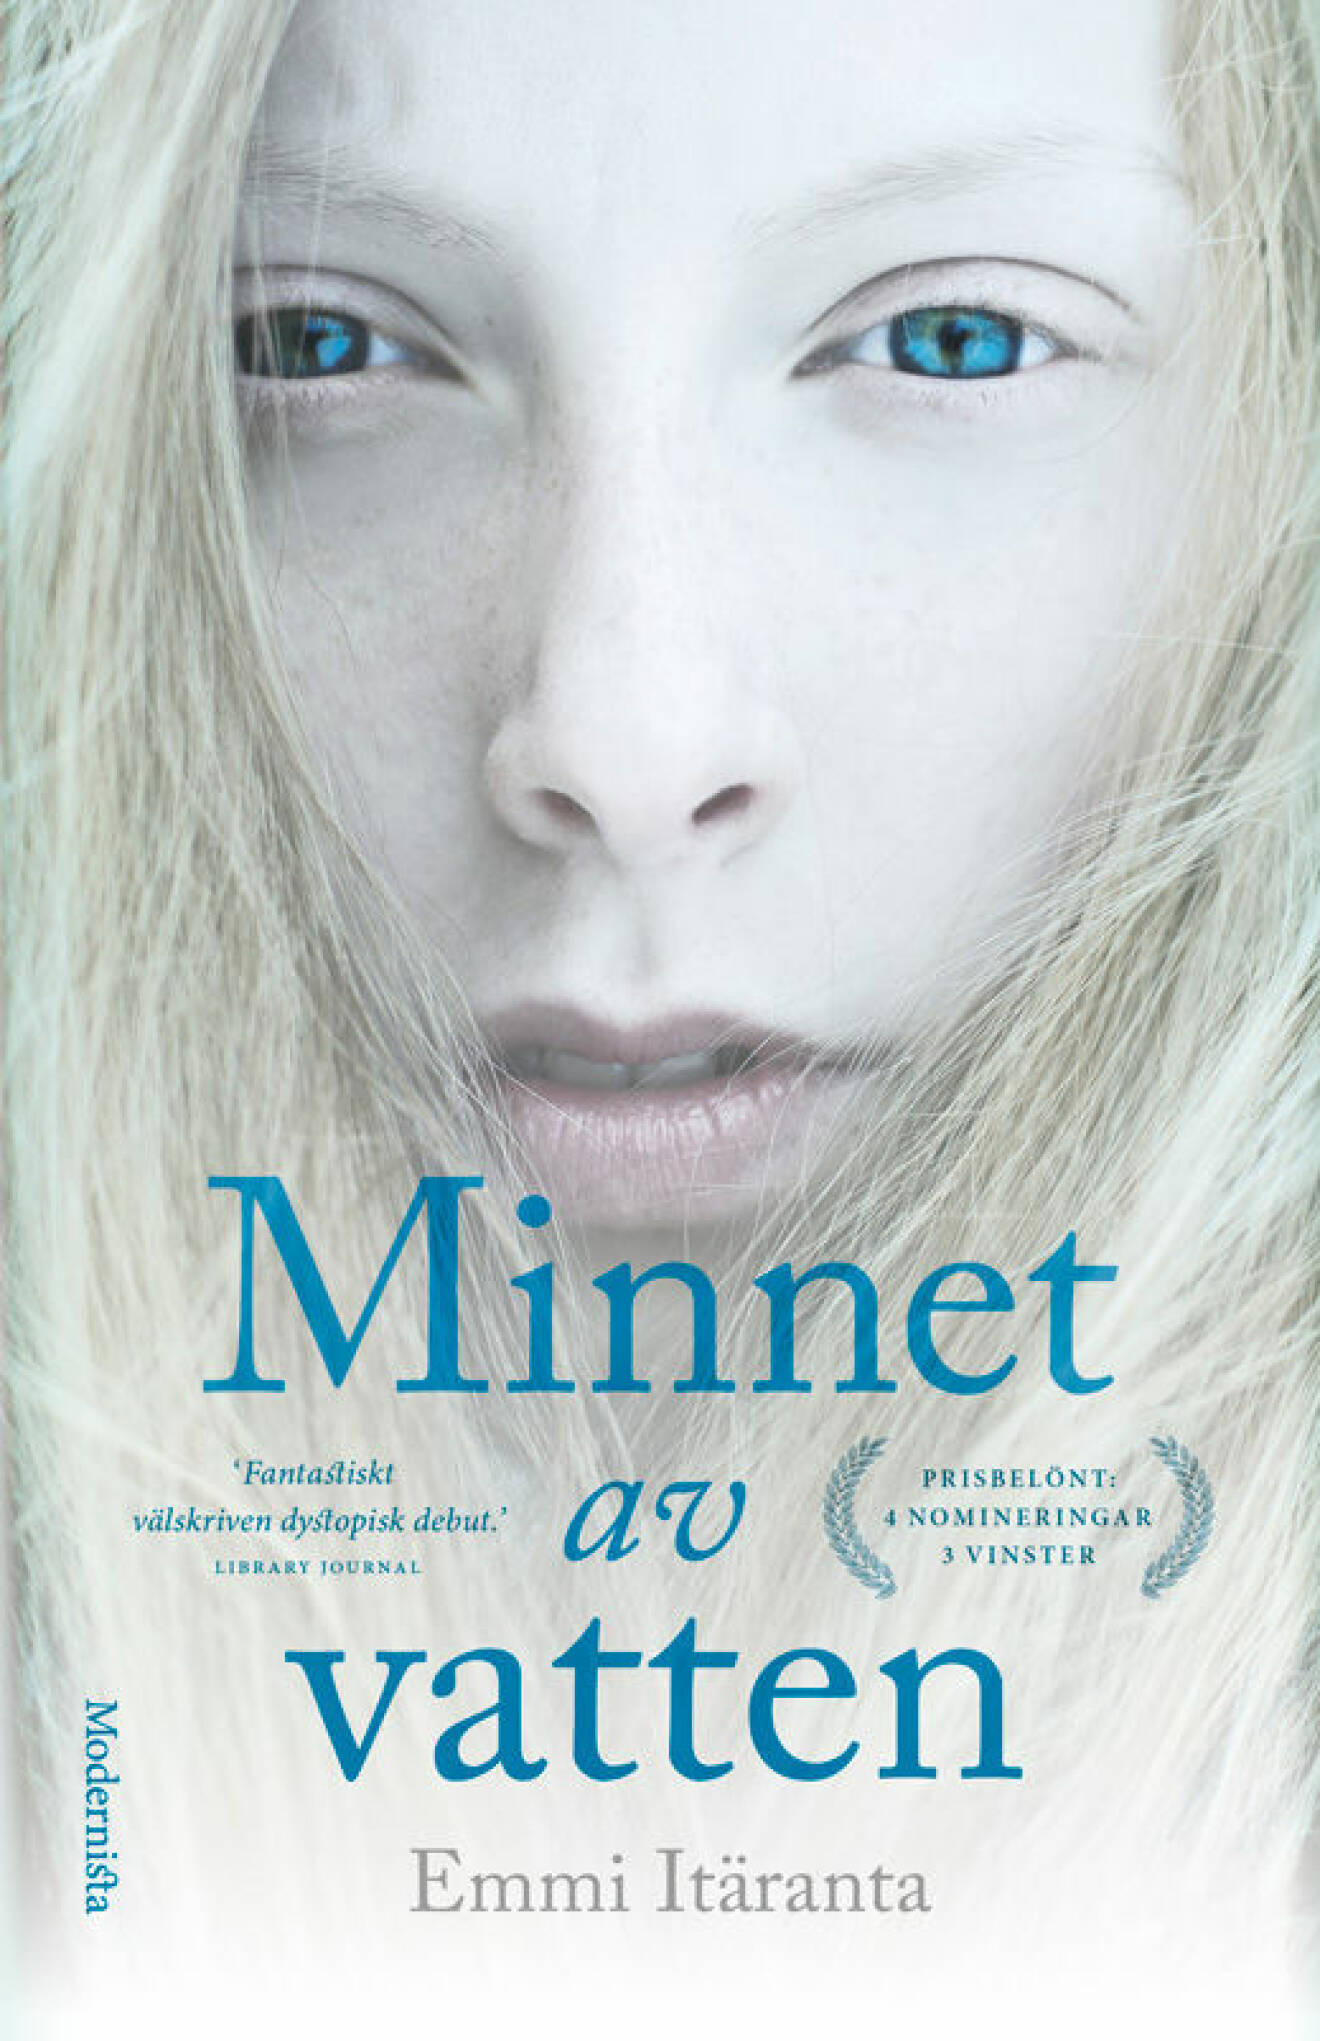 Minnet av vatten, en dystopisk bok av Emmi Itäranta.